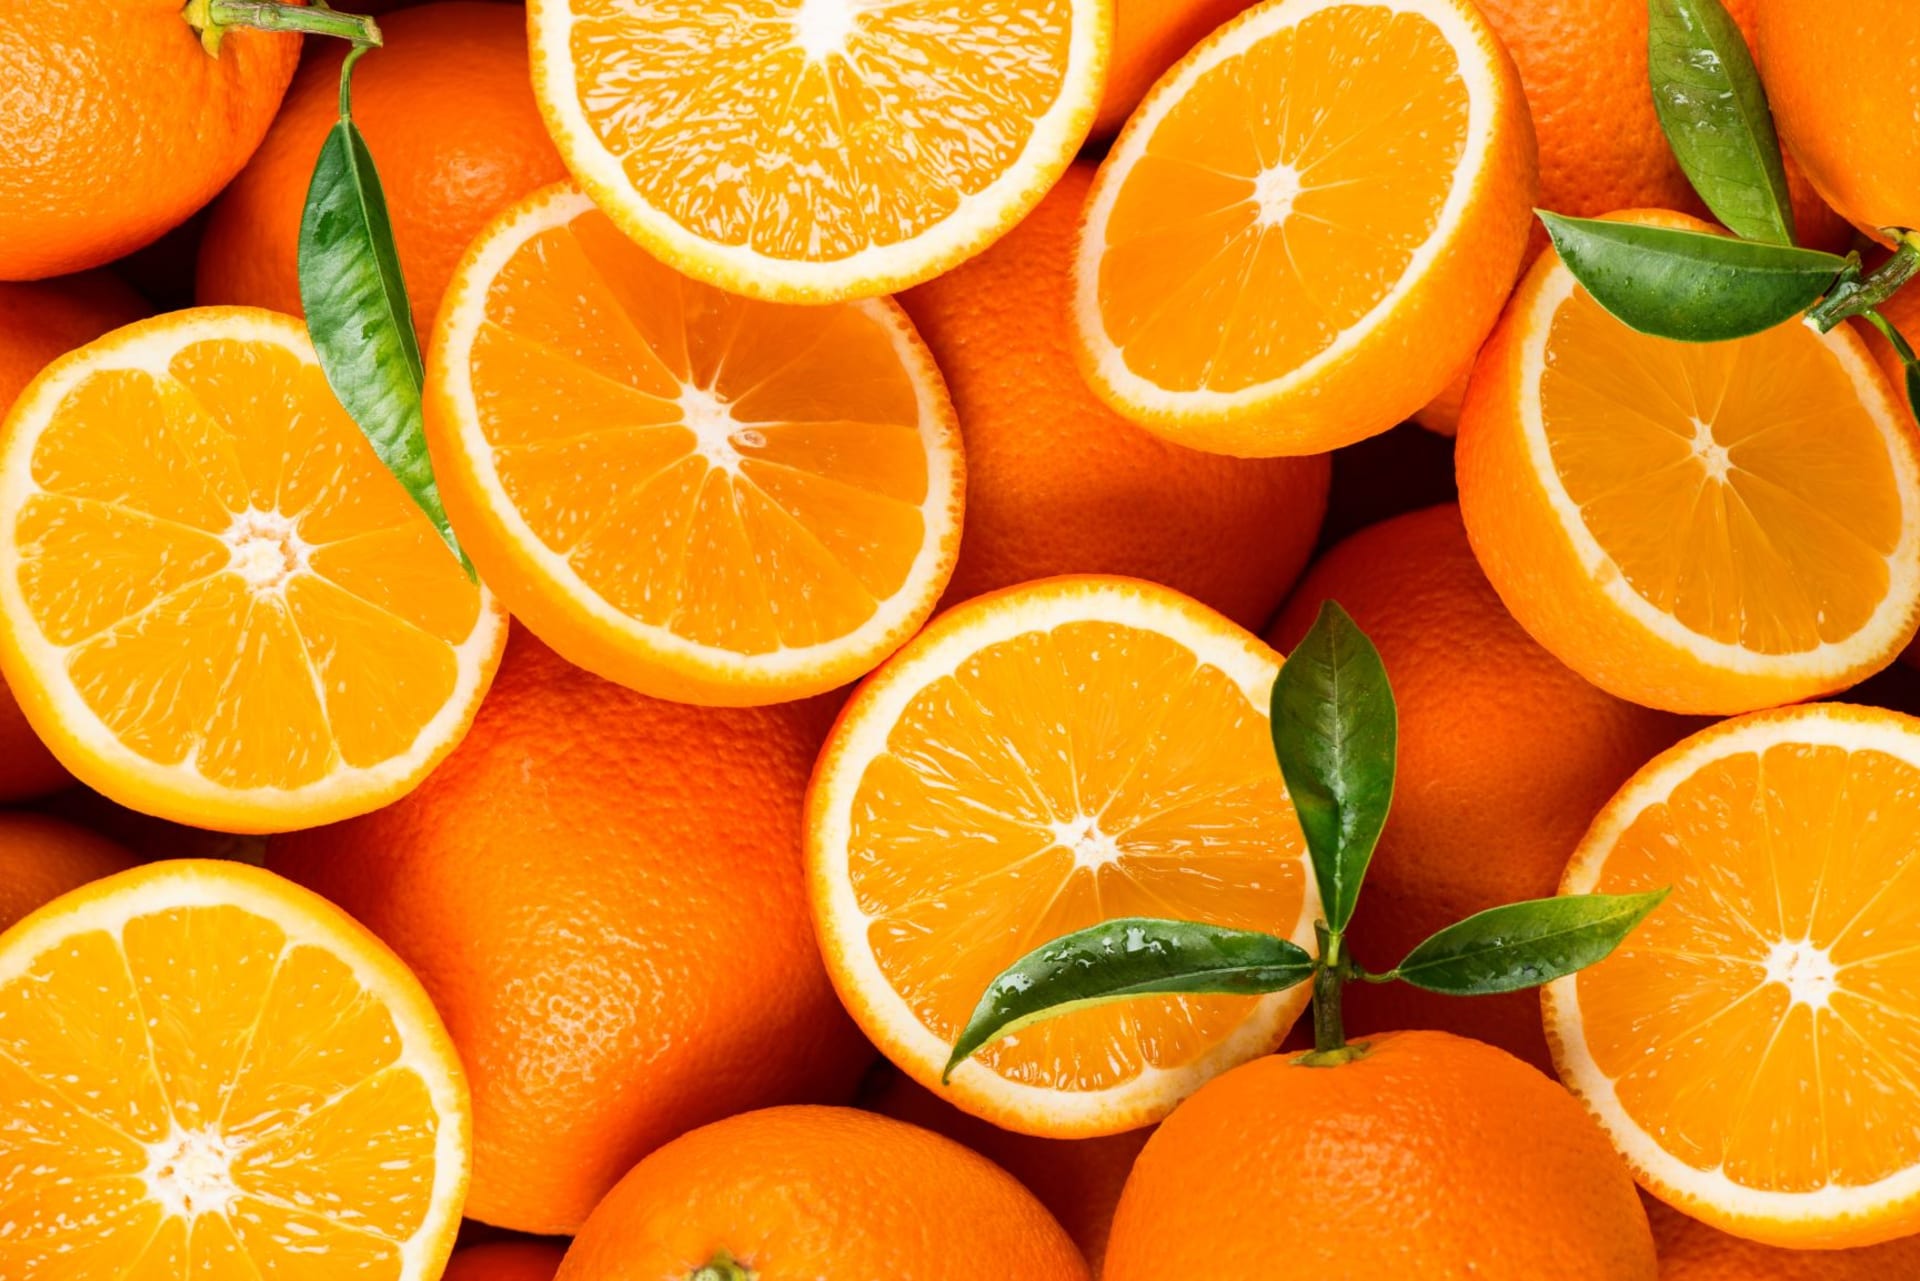 Pomeranče jsou zdrojem vitaminu C (ve 100 g je okolo 60 mg céčka), což oceníme zvláště v zimních měsících.